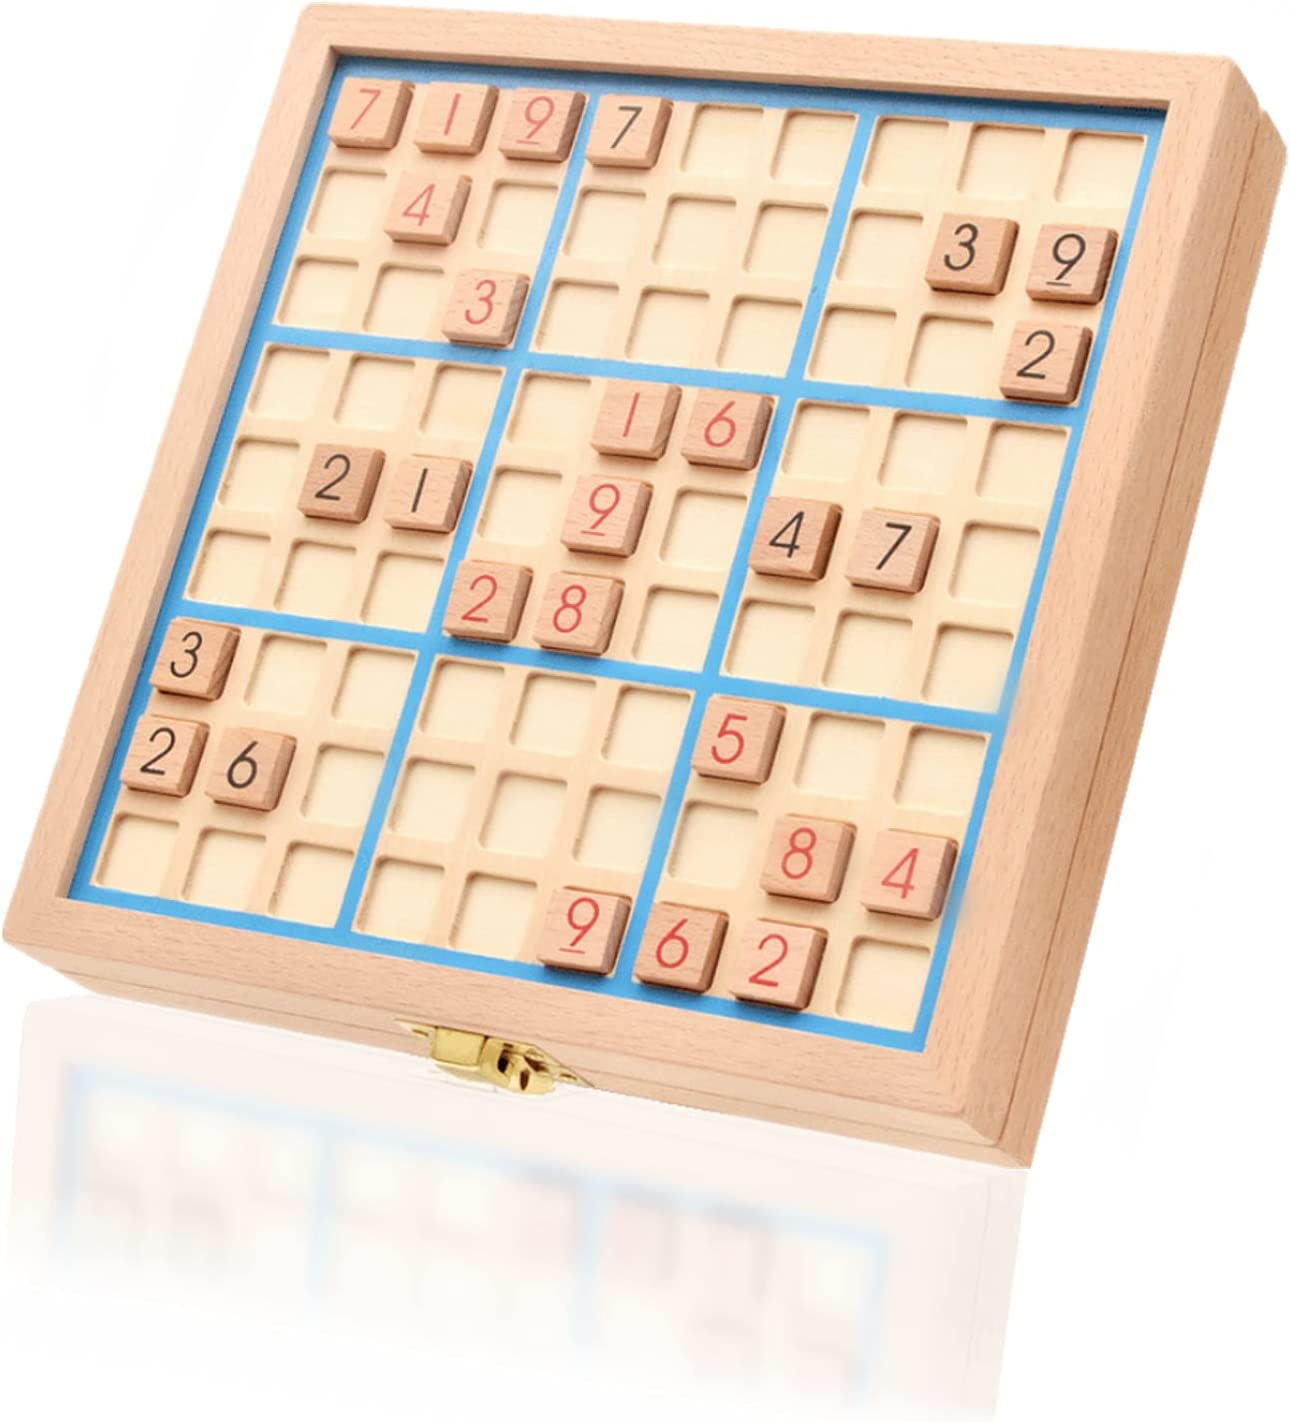 Cách chơi Sudoku - Lịch sử, quy tắc và chiến thuật giải cho người mới